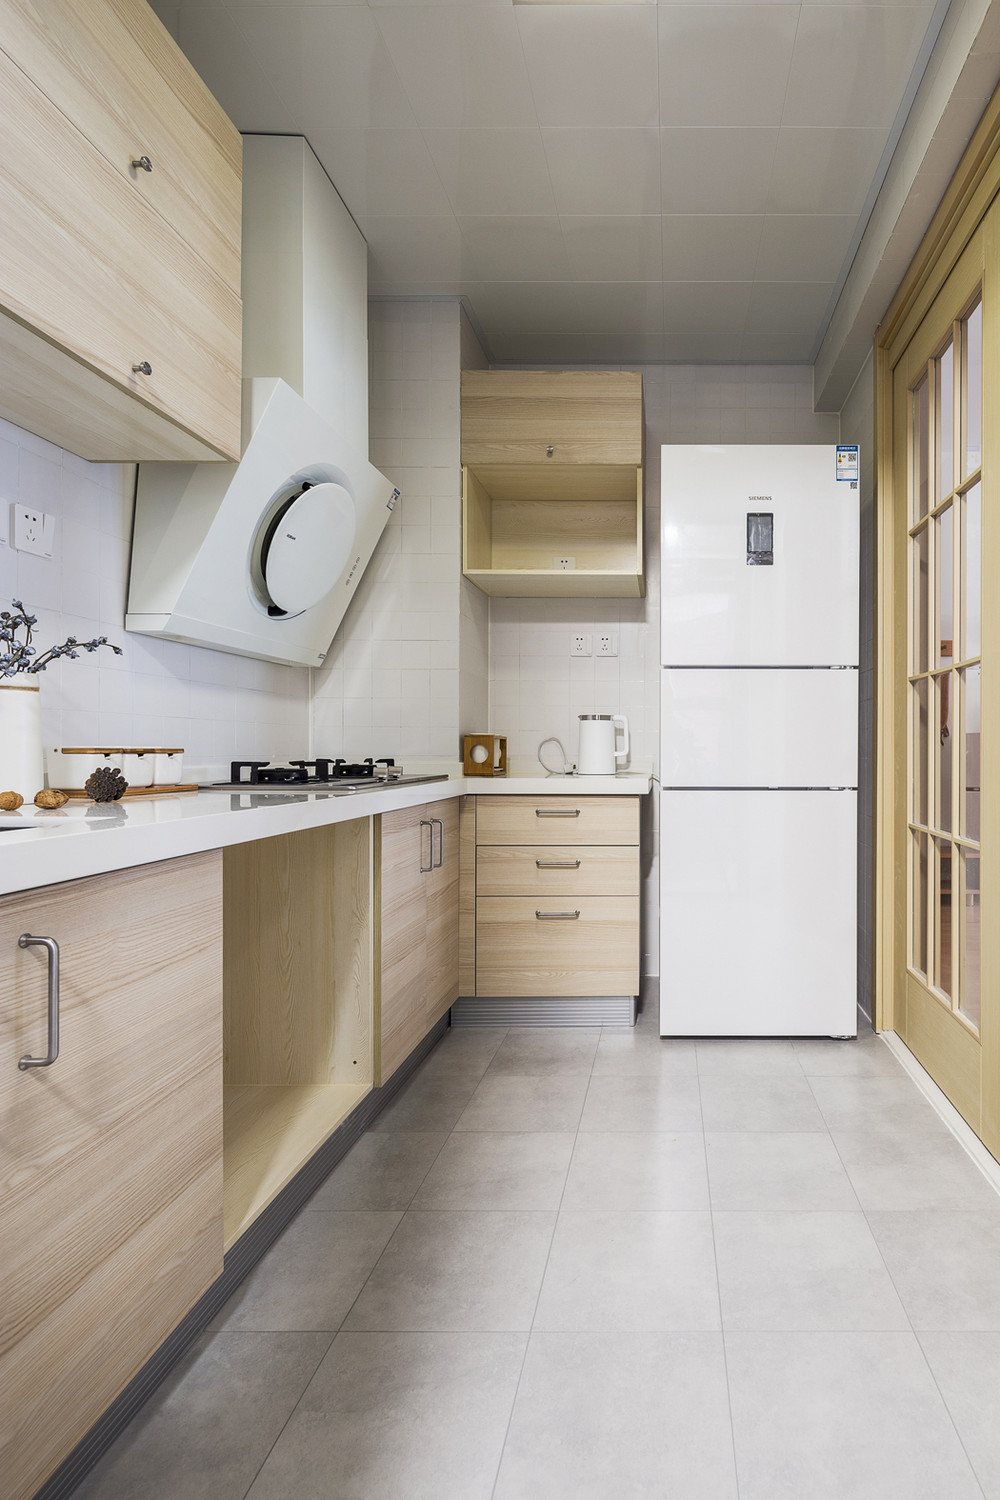 88平米日式风格三室厨房装修效果图,墙面创意设计图